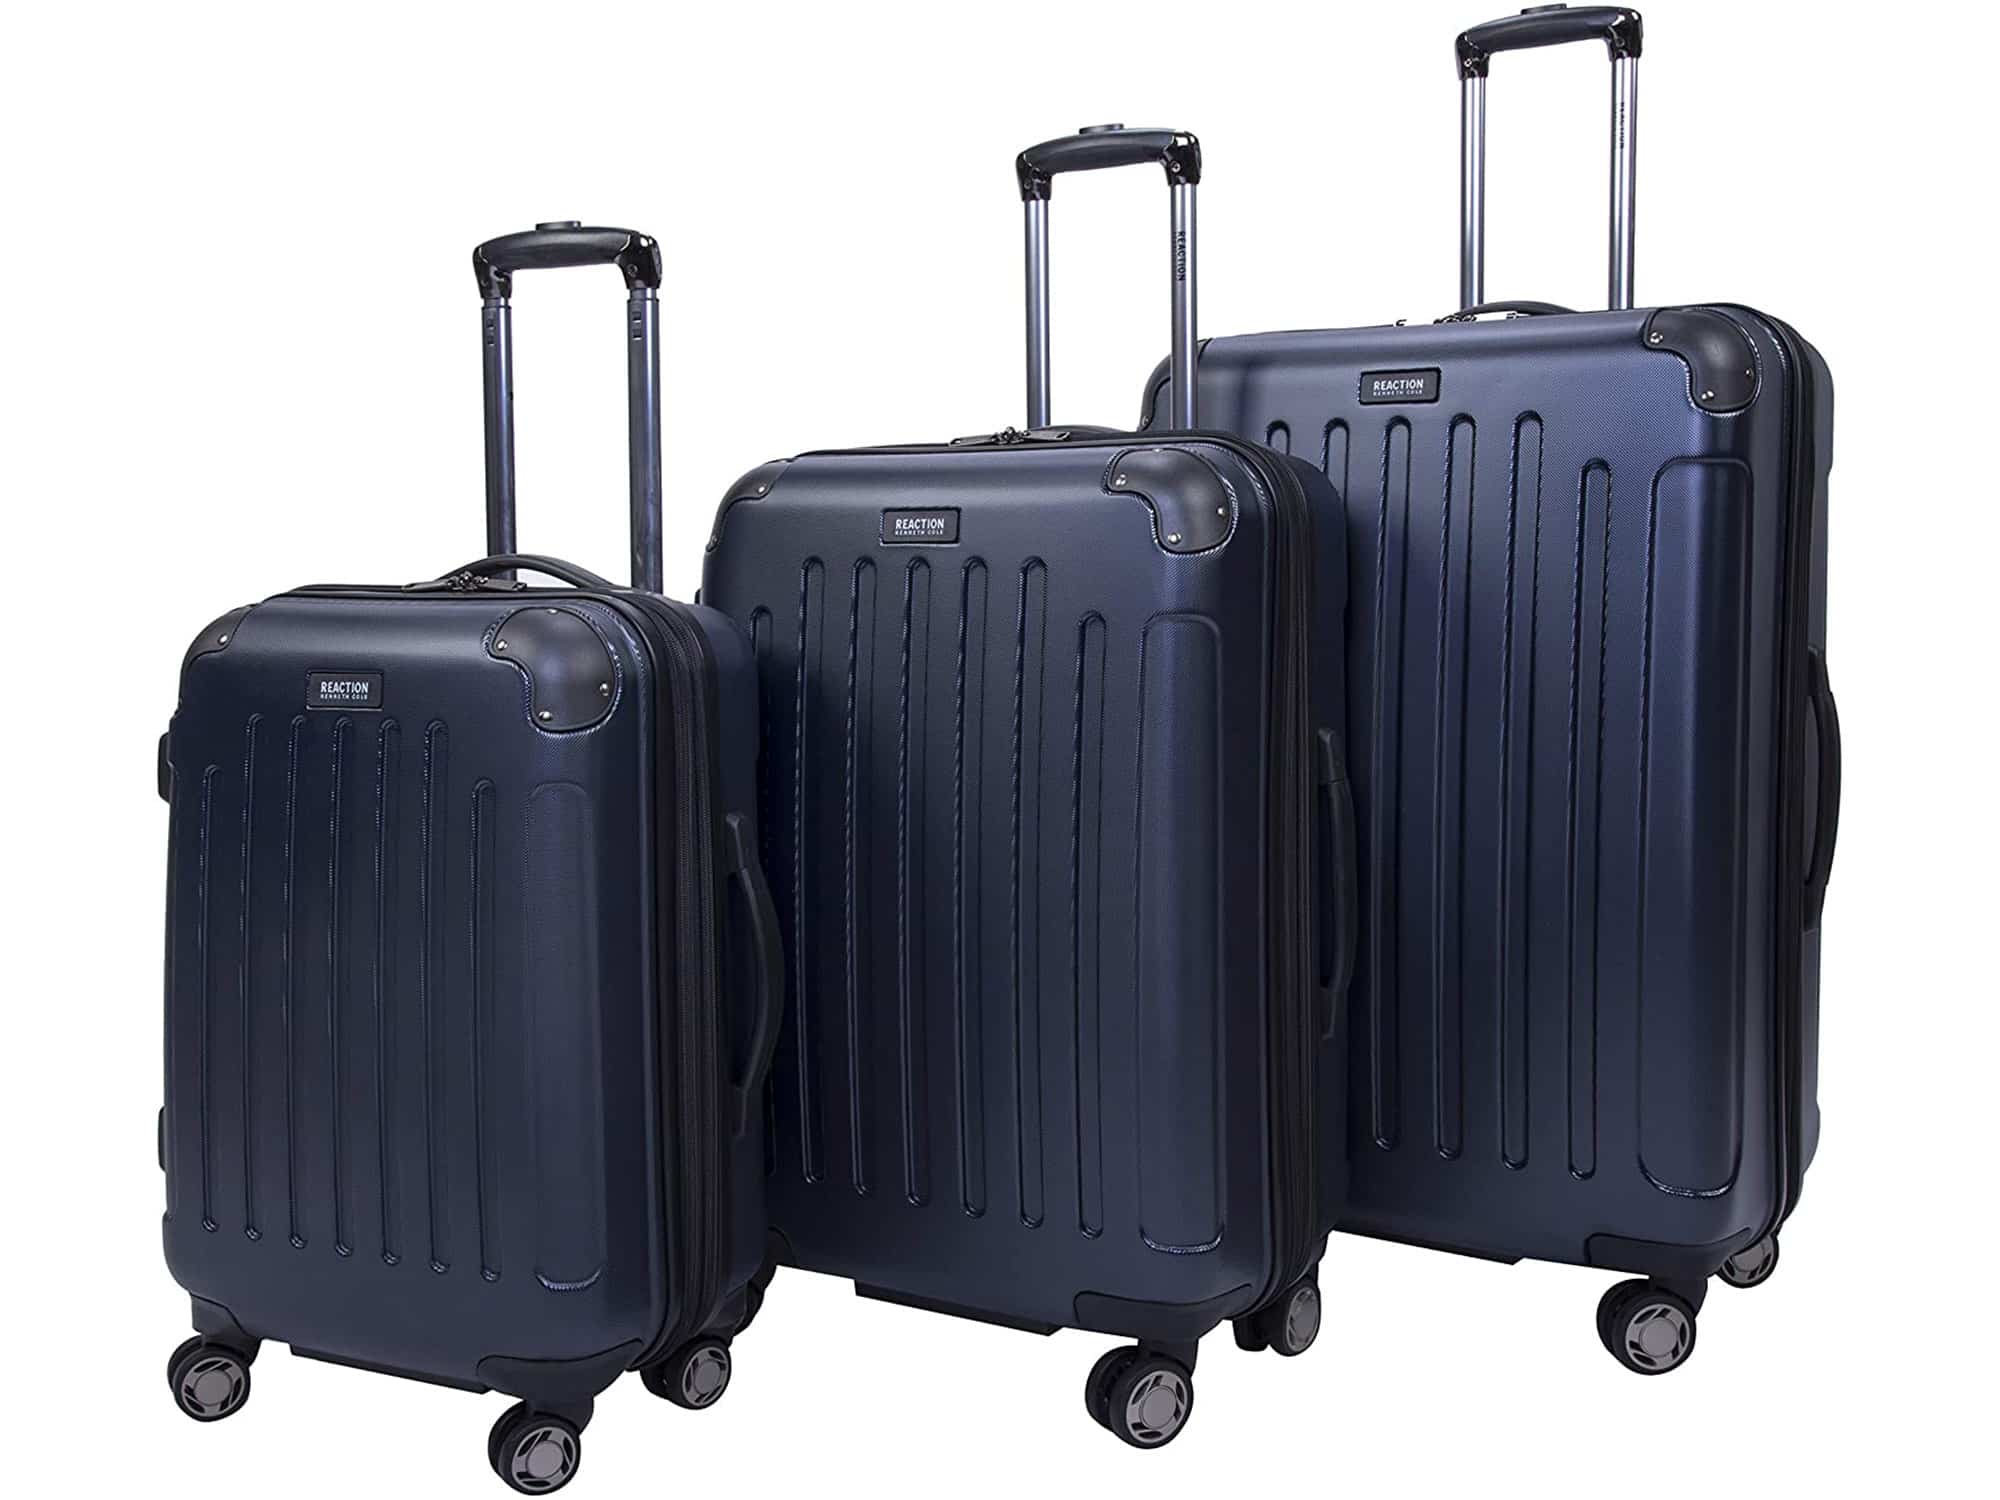 Kenneth Cole luggage